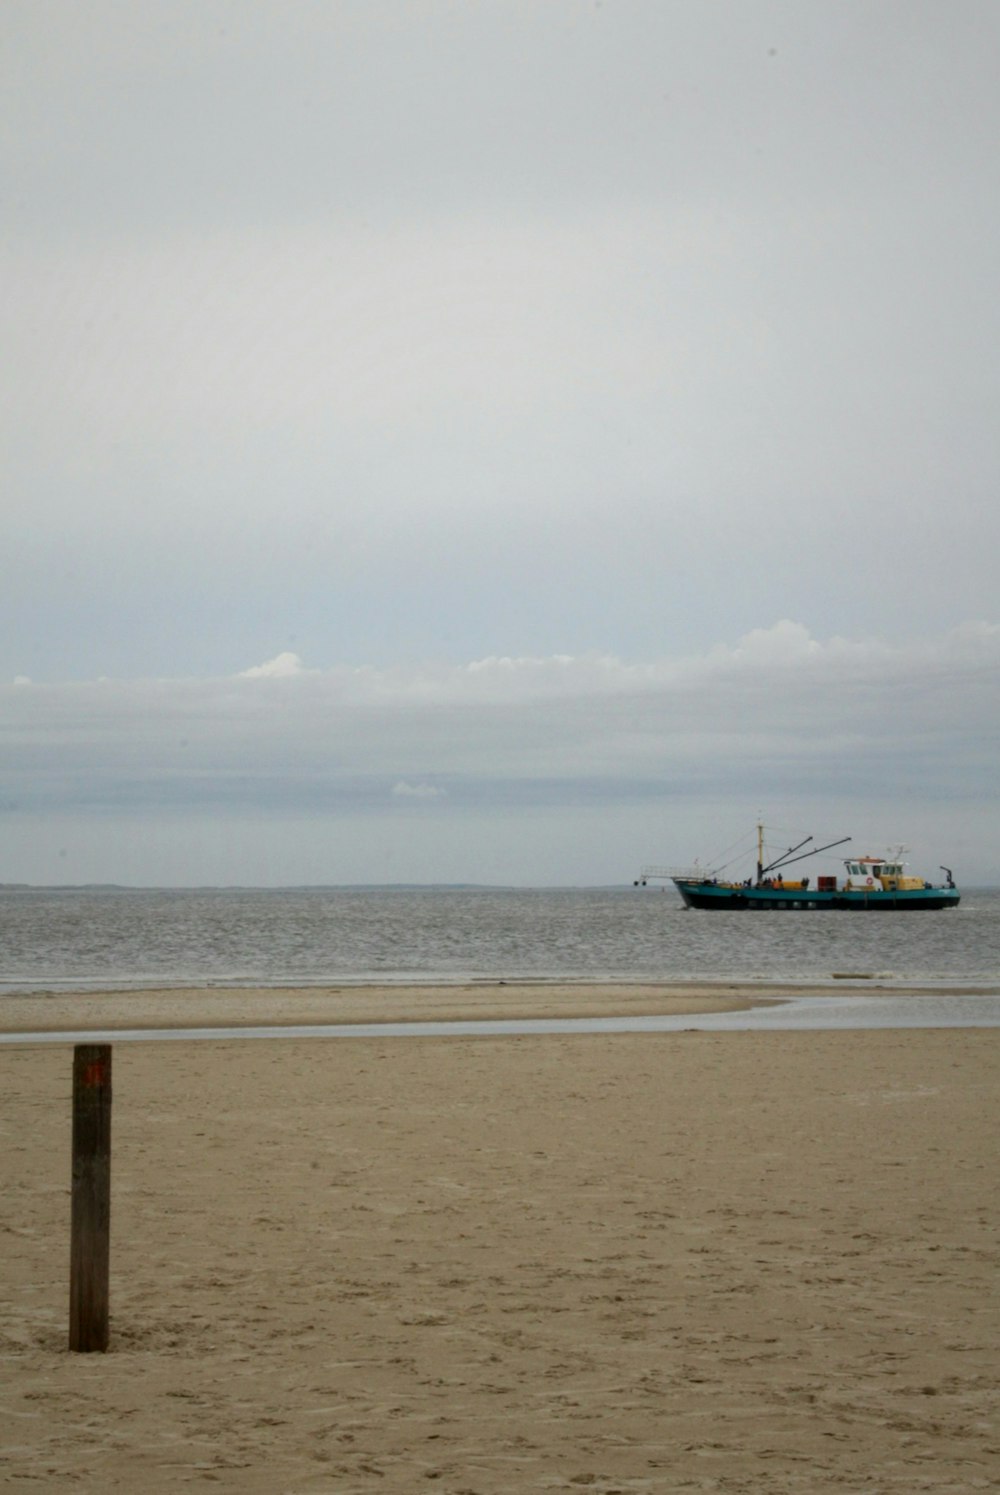 Un barco se ve a lo lejos en la playa